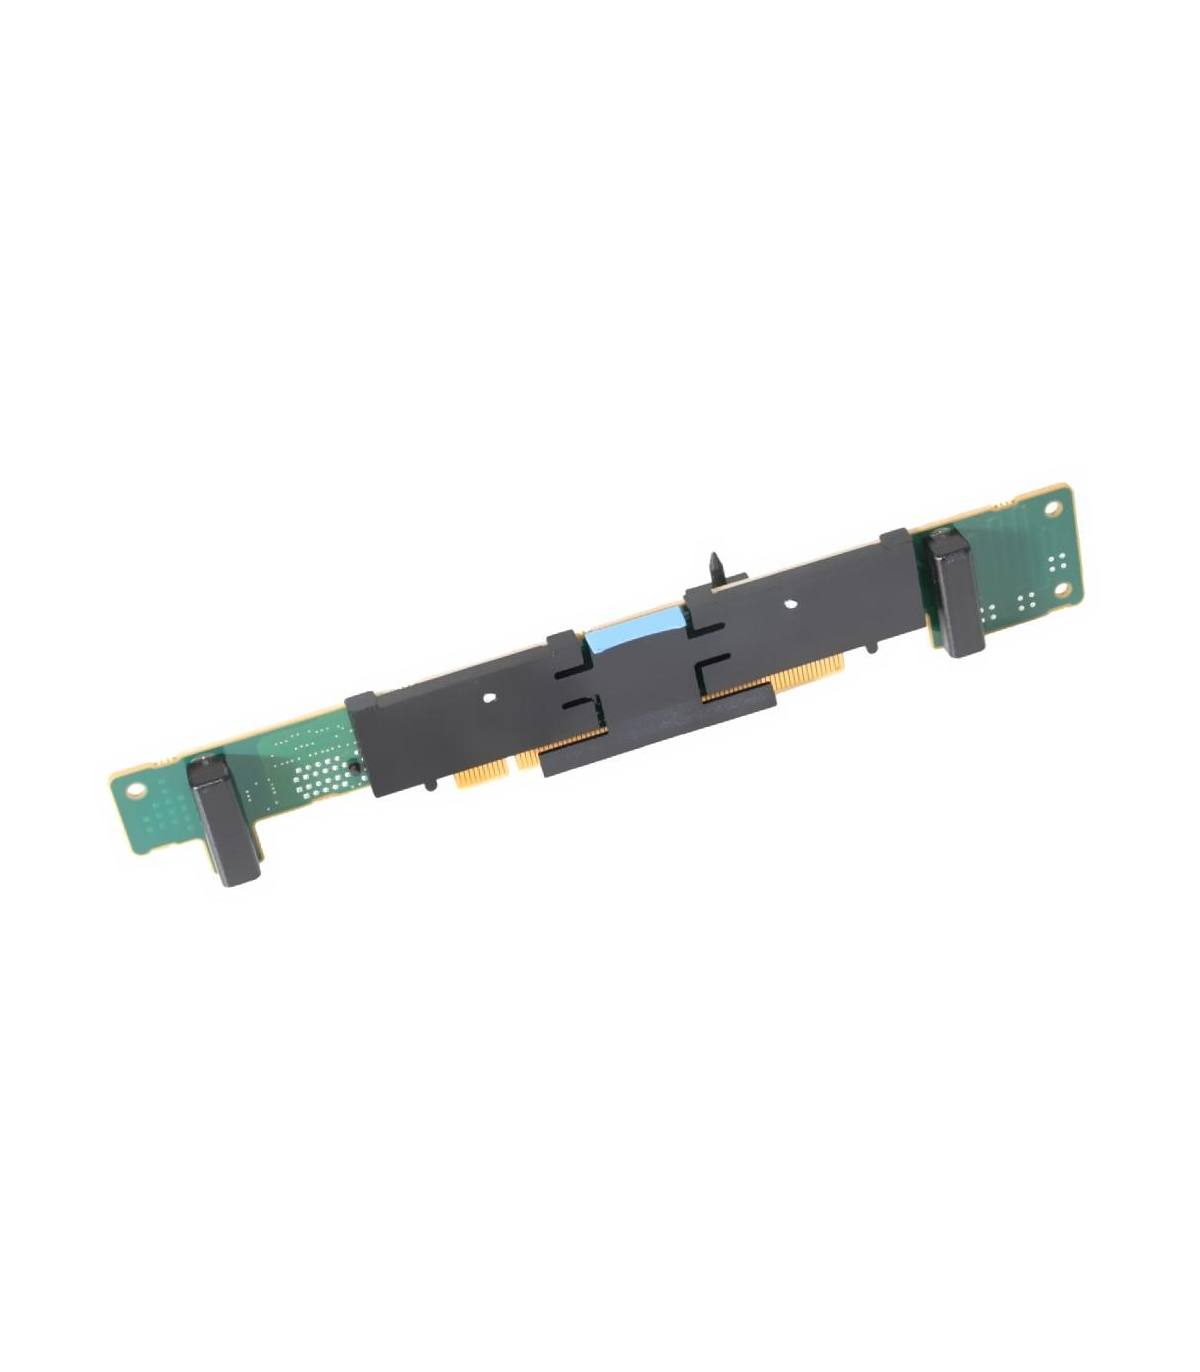 RISER BOARD CARD 06KMHT DELL POWEREDGE R610 PCIE X8